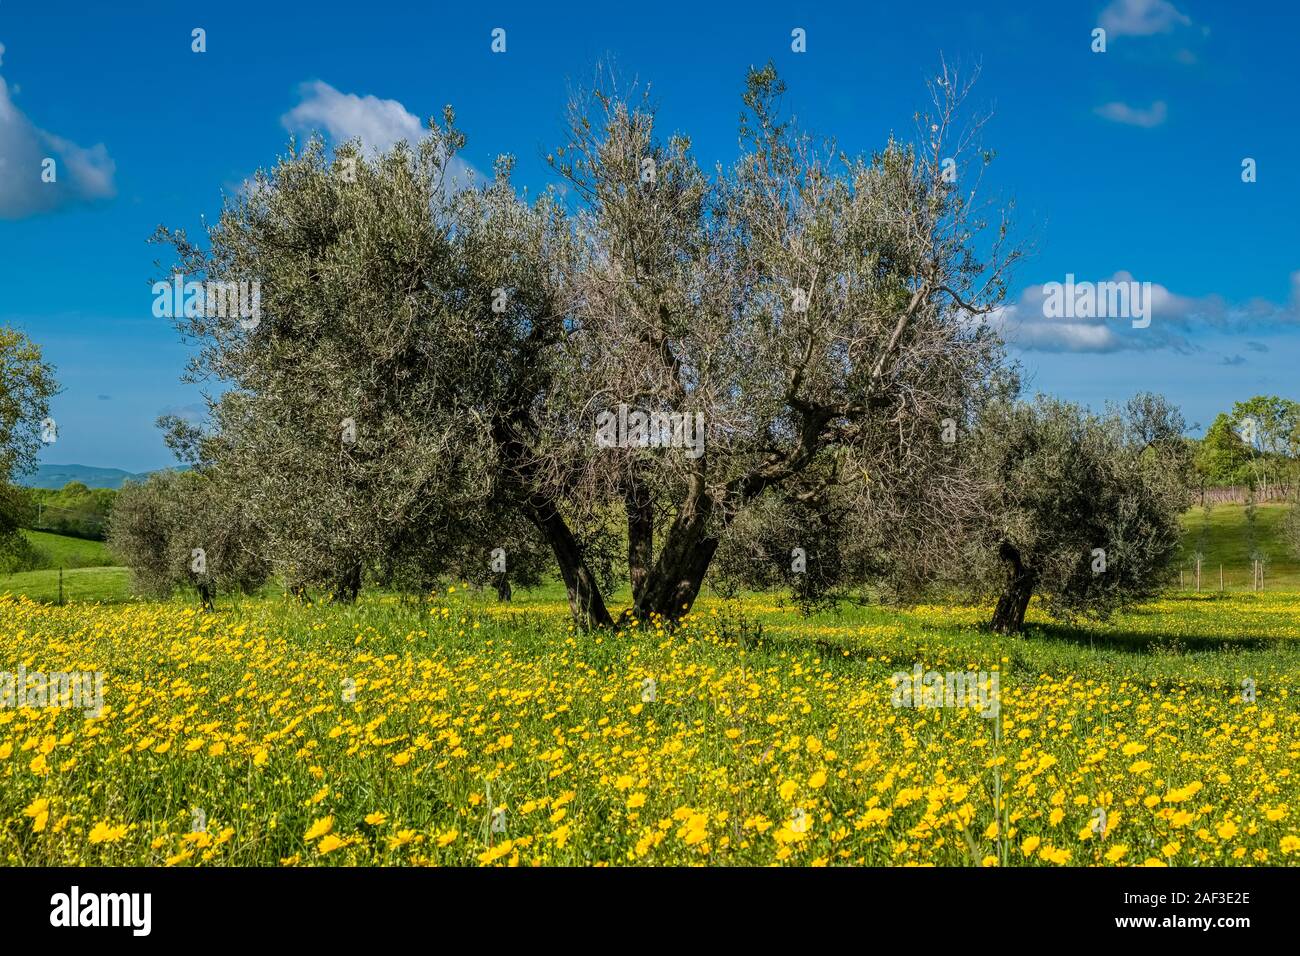 Grandi alberi di olivo in un frutteto su un prato verde con fiori di colore giallo Foto Stock